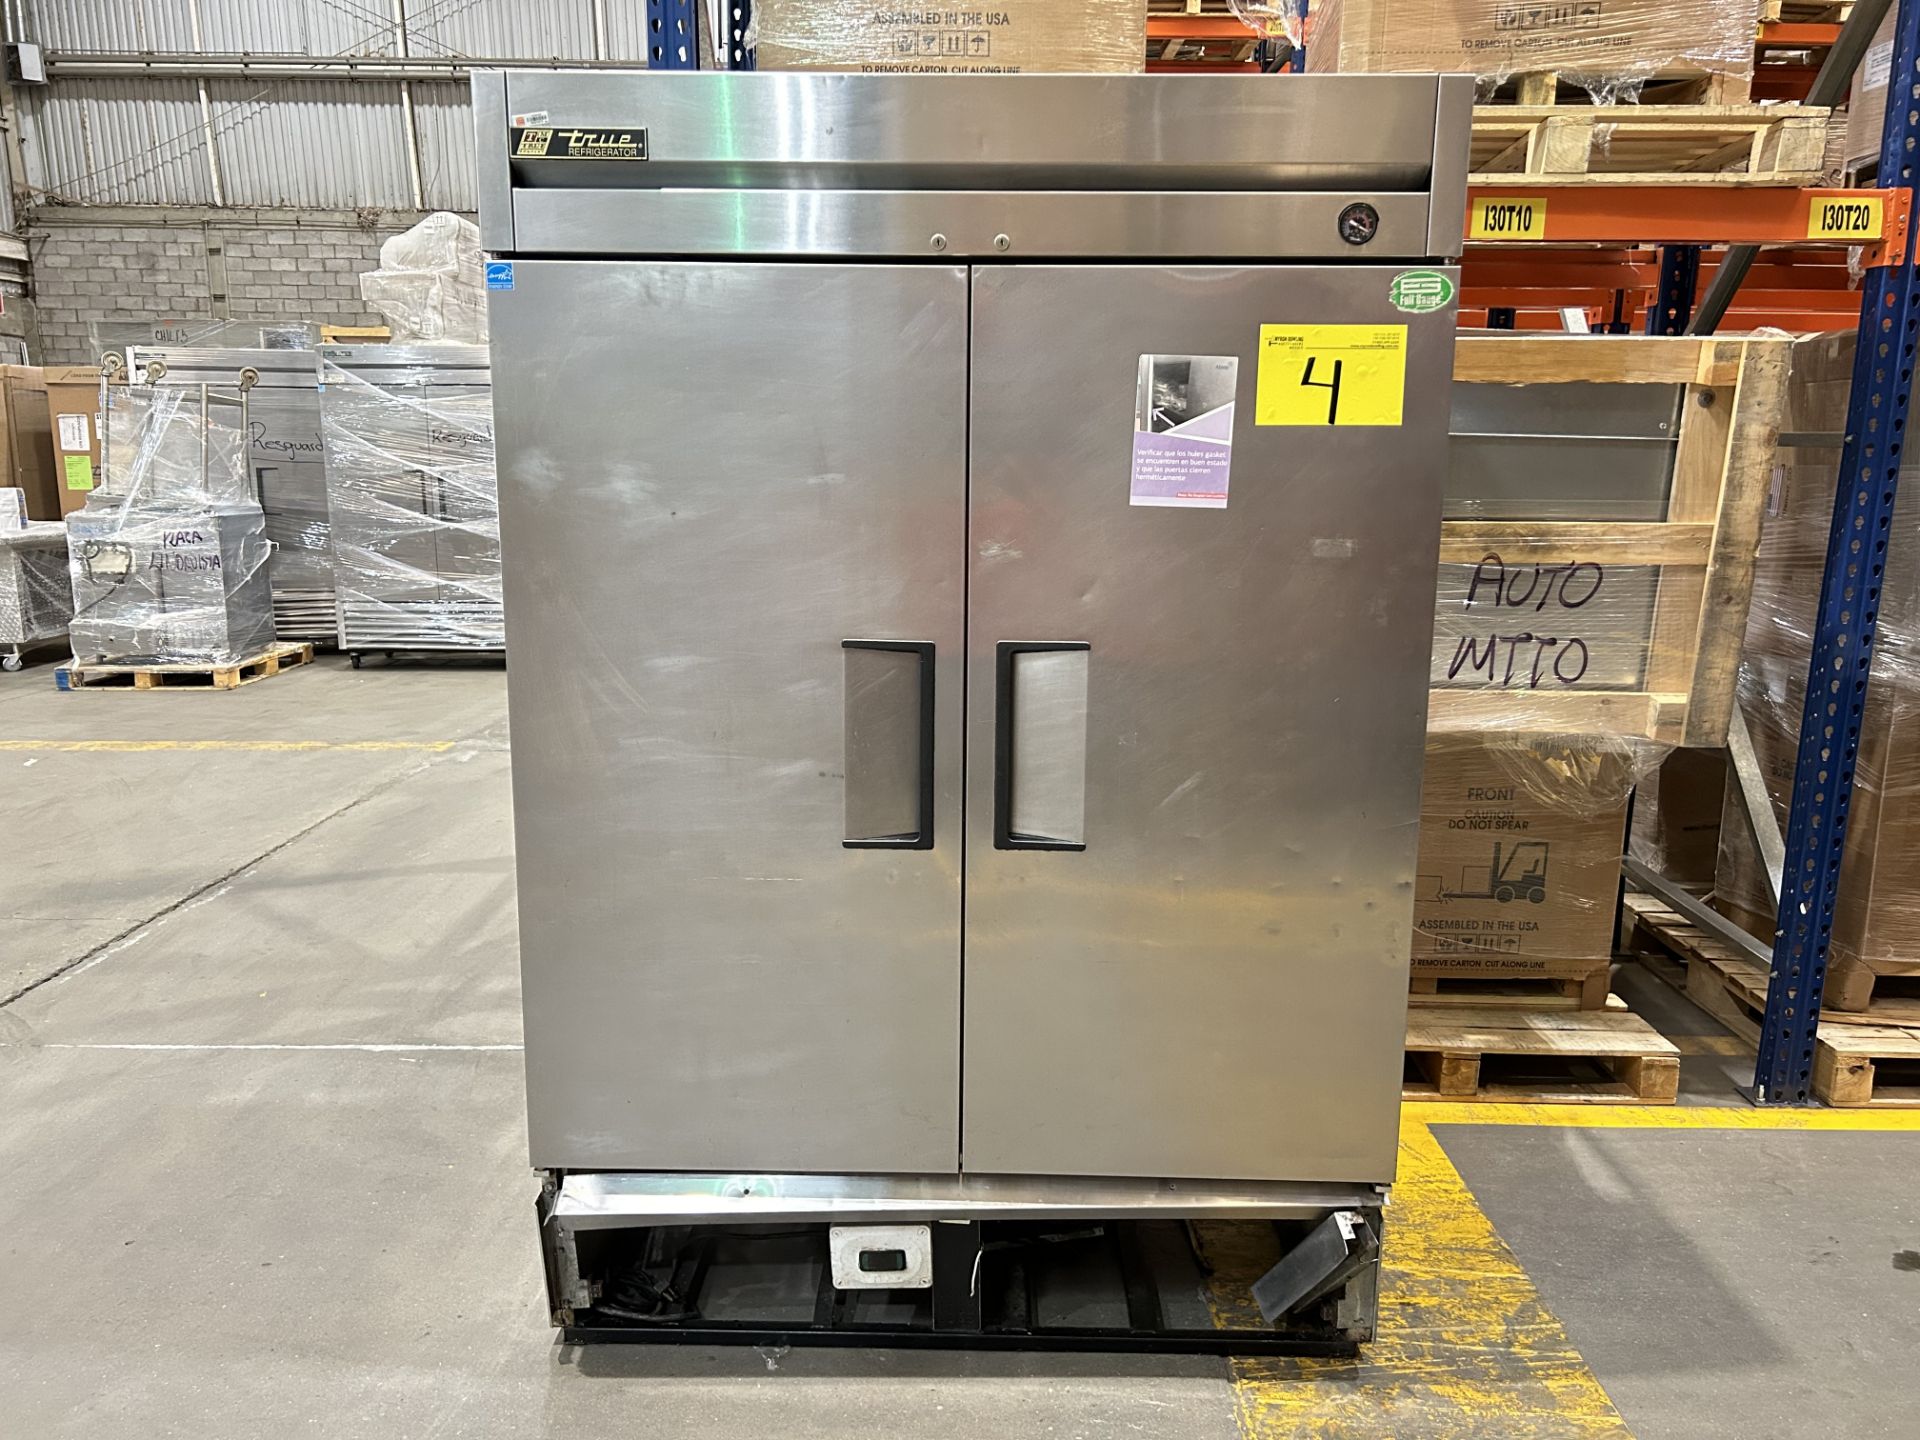 1 Refrigerador Marca TRUE Modelo T-49, Serie 8178940, 115 v 60 Hz, Medidas 127 cm x 75 cm x 199 cm